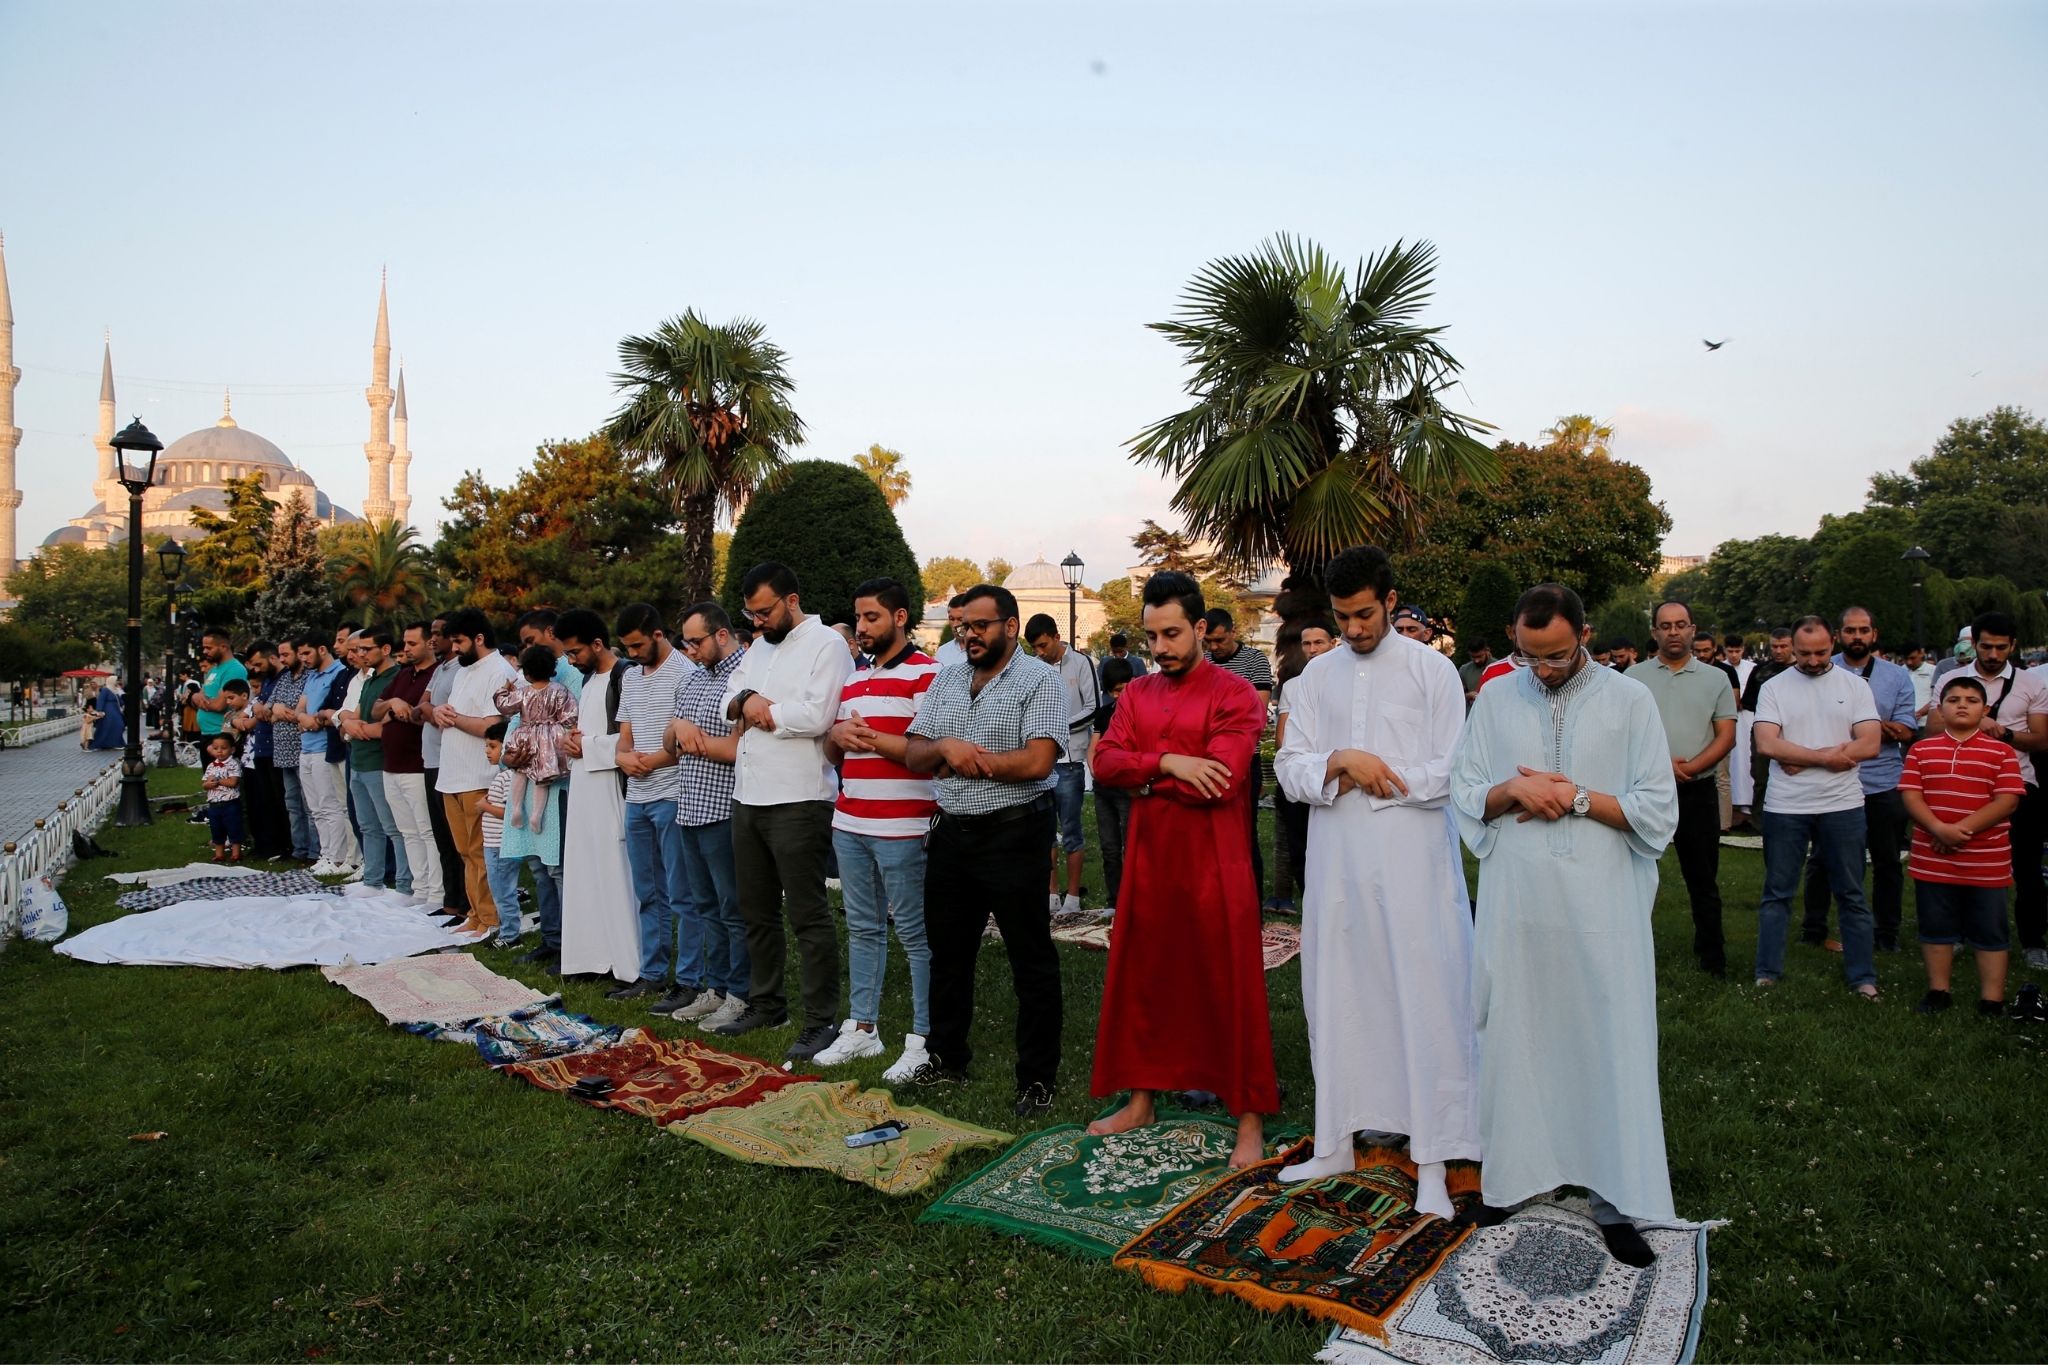 9 جولائی 2022 کو ترکی کے شہر استنبول میں سلطان احمد سکوائر میں عید الاضحی کی مسلم تعطیل کے پہلے دن لوگ نماز ادا کر رہے ہیں۔